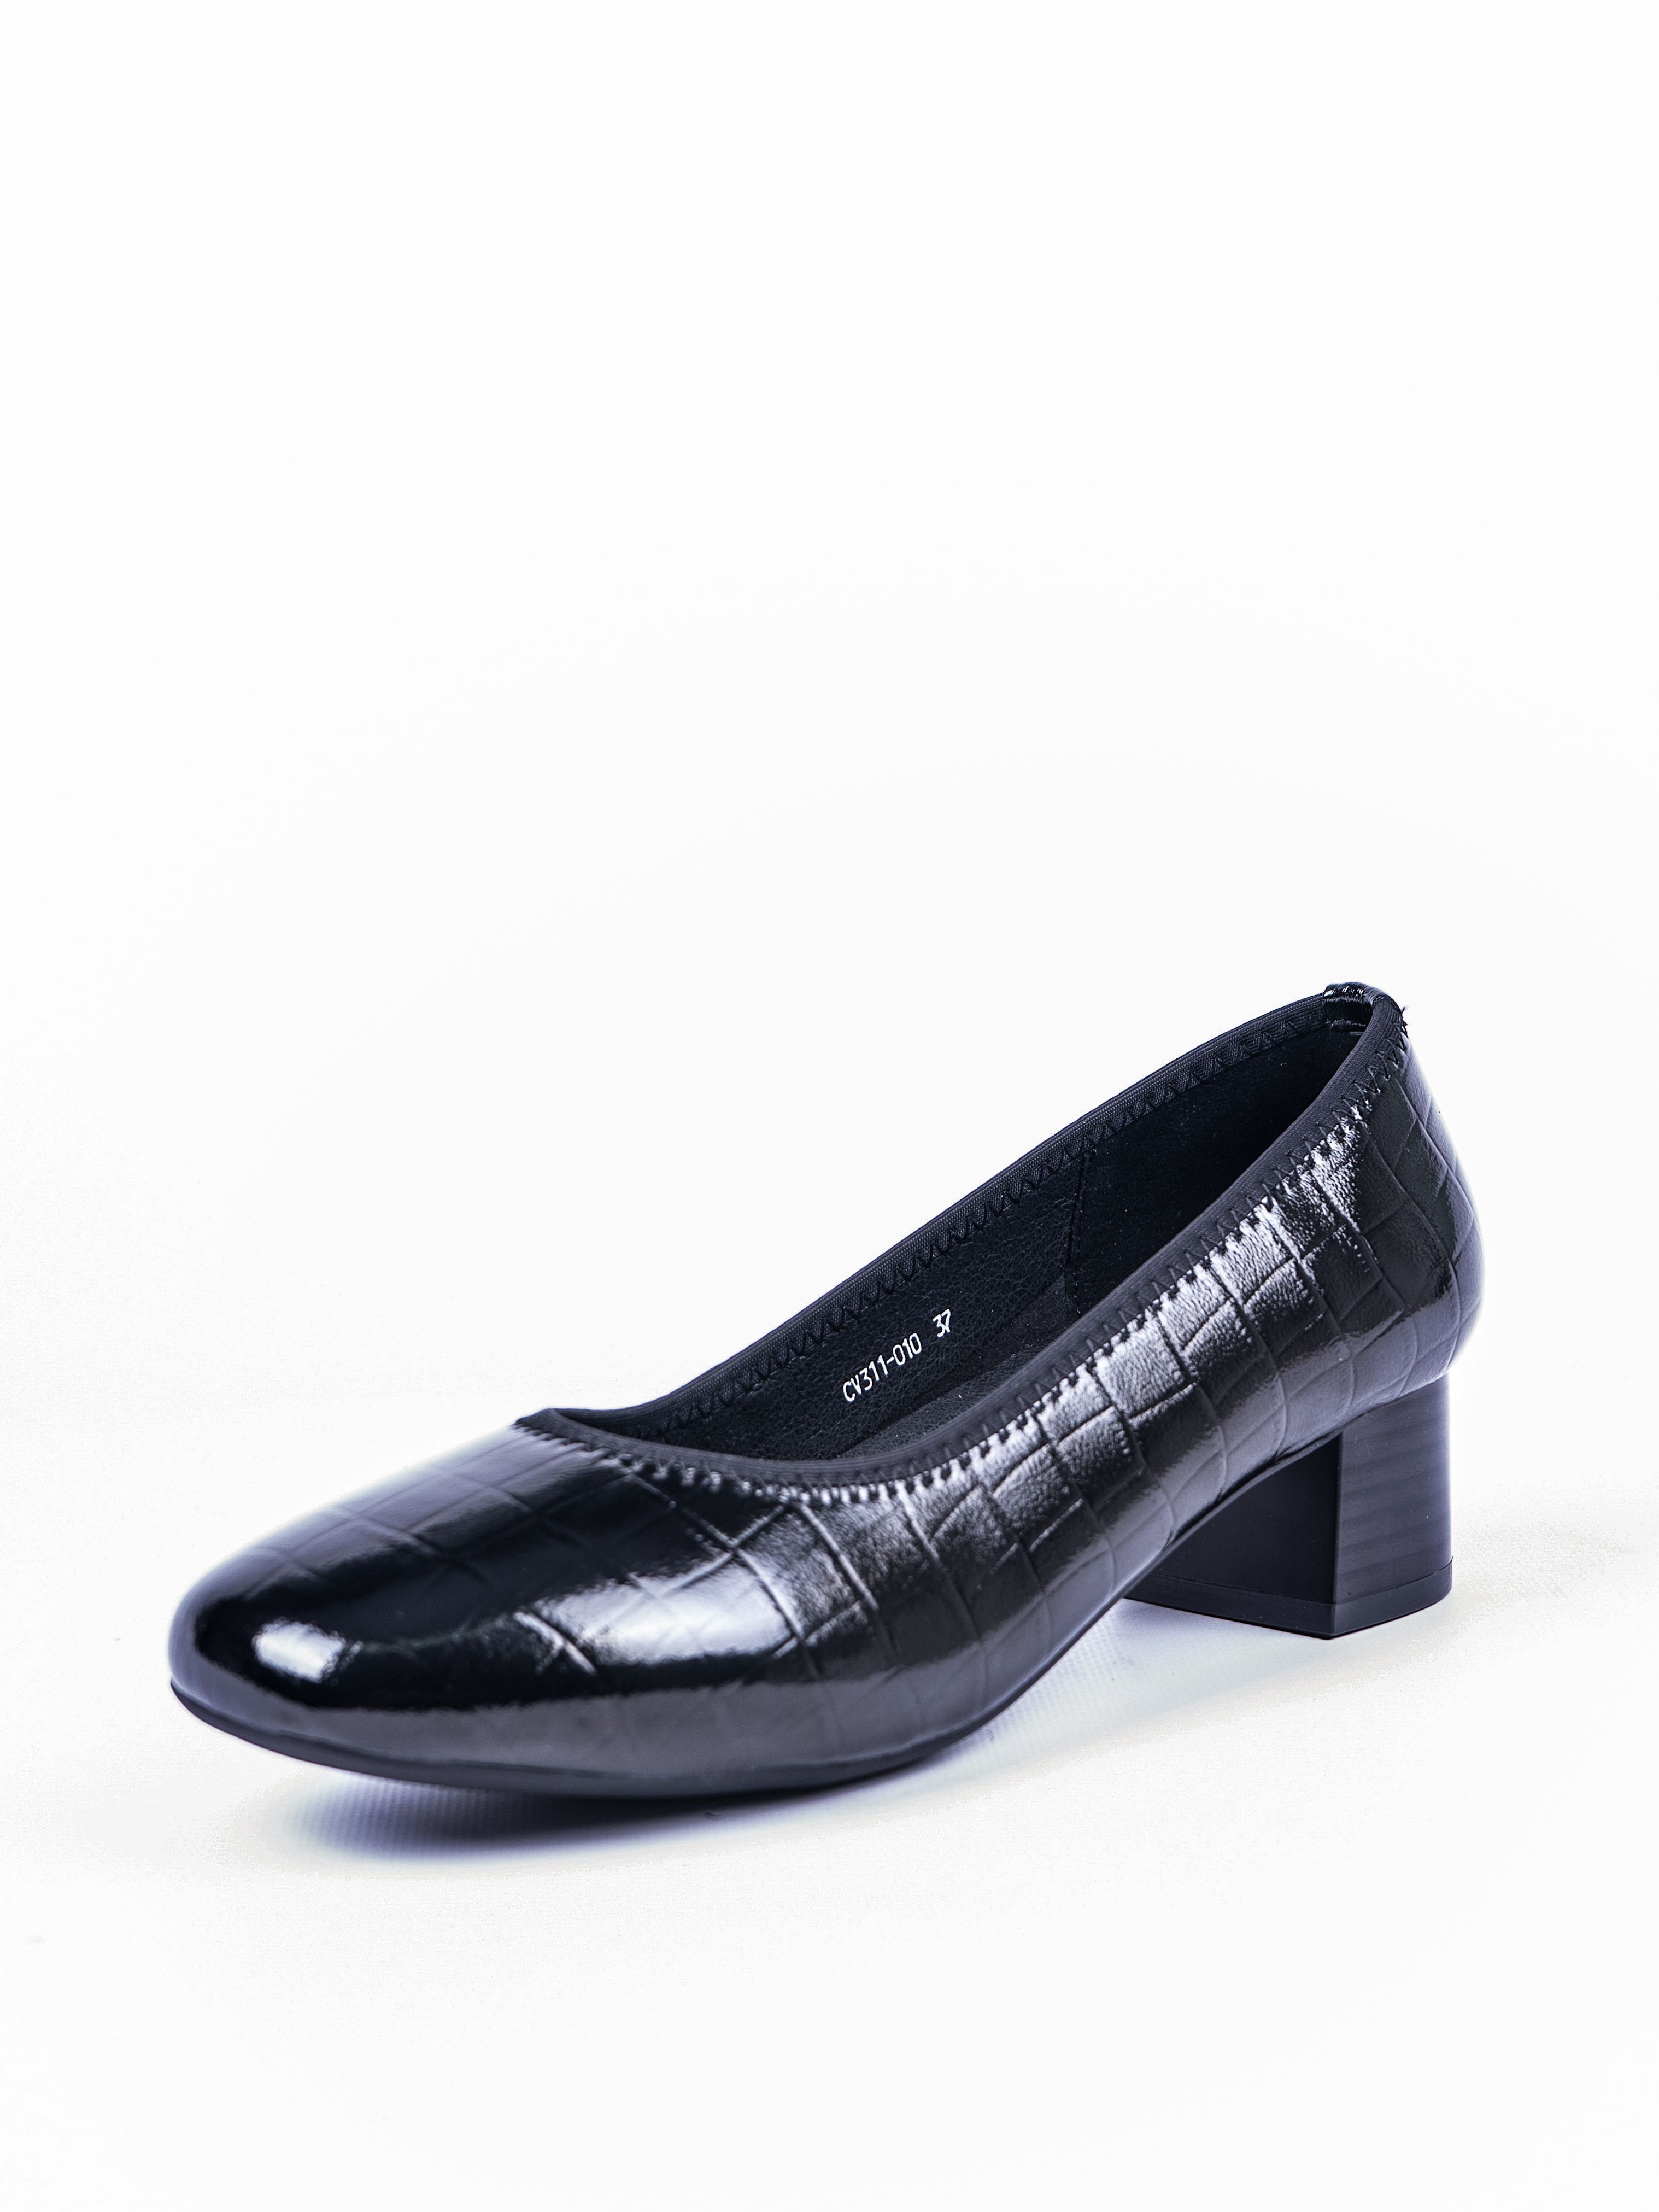 Туфли женские Baden CV311-010 черные 36 RU